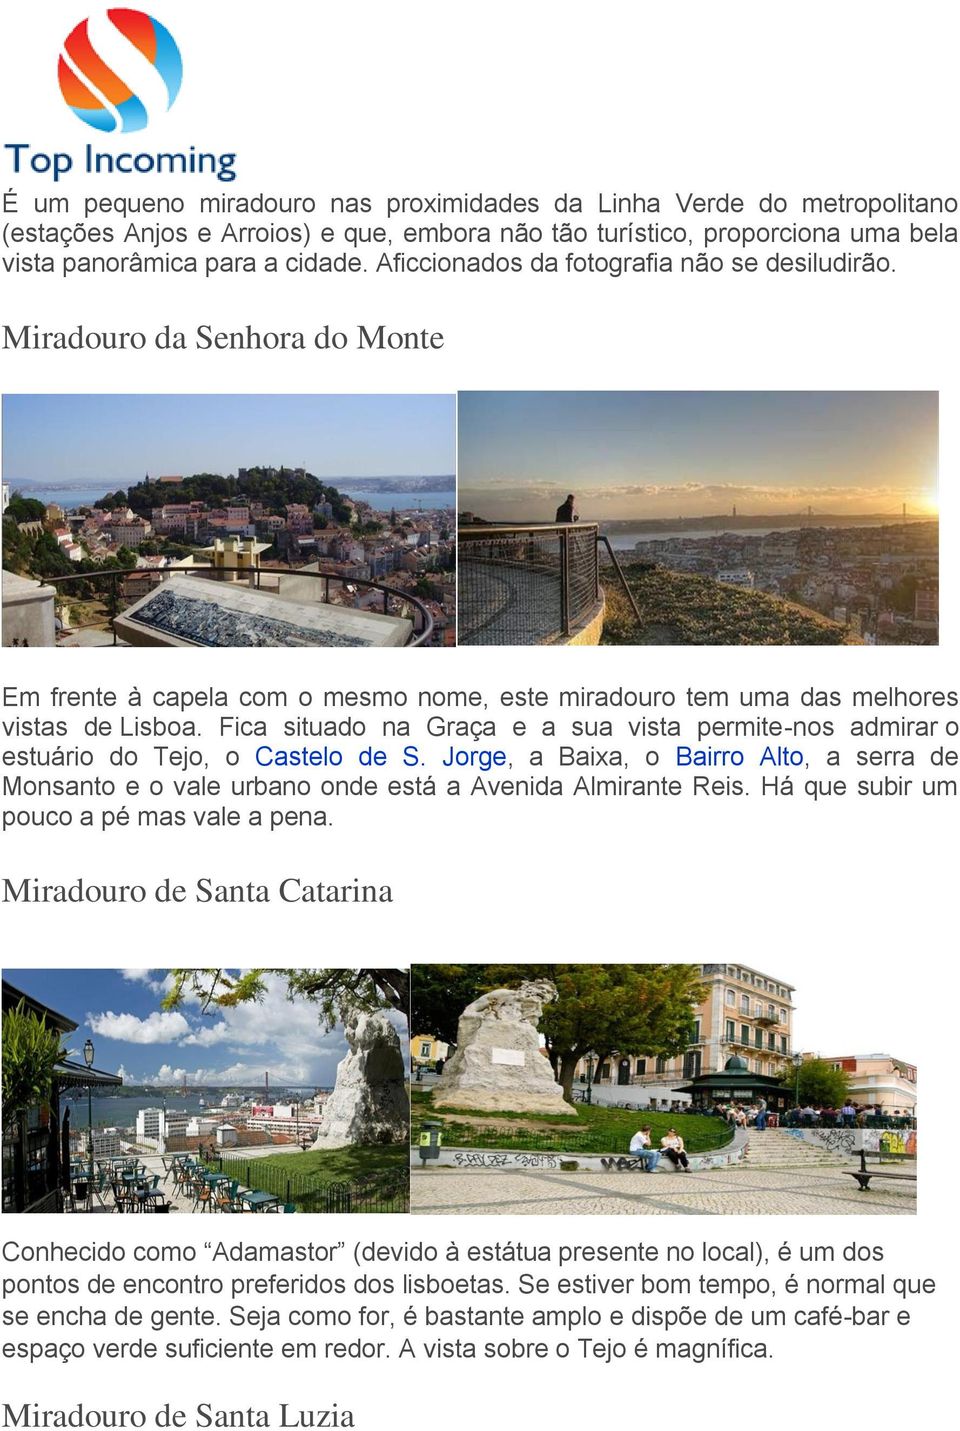 Fica situado na Graça e a sua vista permite-nos admirar o estuário do Tejo, o Castelo de S. Jorge, a Baixa, o Bairro Alto, a serra de Monsanto e o vale urbano onde está a Avenida Almirante Reis.